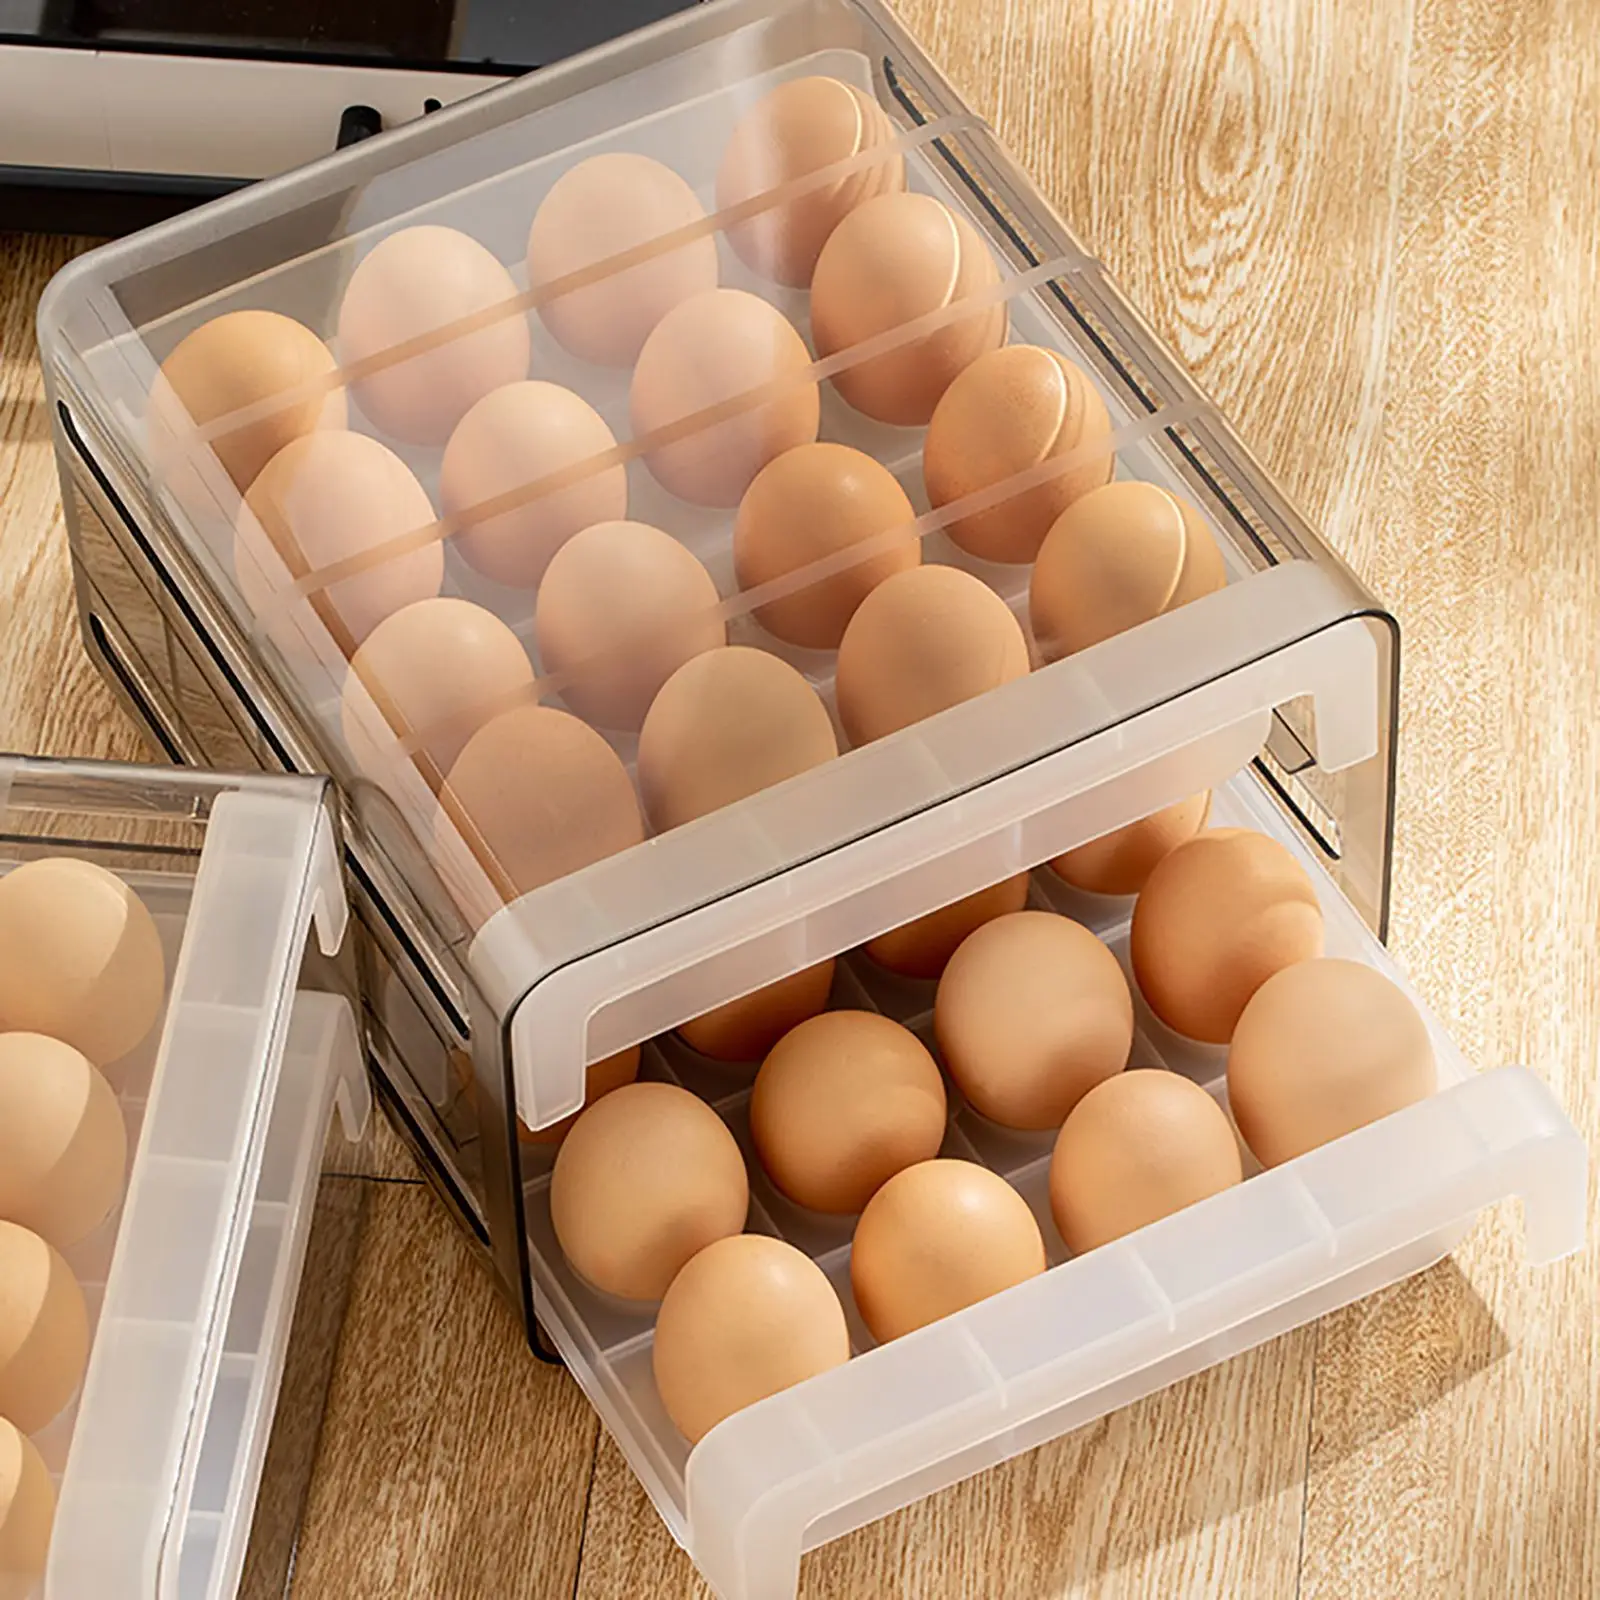 

32 сетки с выдвижными ящиками яйцо держатель двойного Слои Штабелируемый ящик для хранения яиц прозрачный органайзер для яиц лоток с вентил...